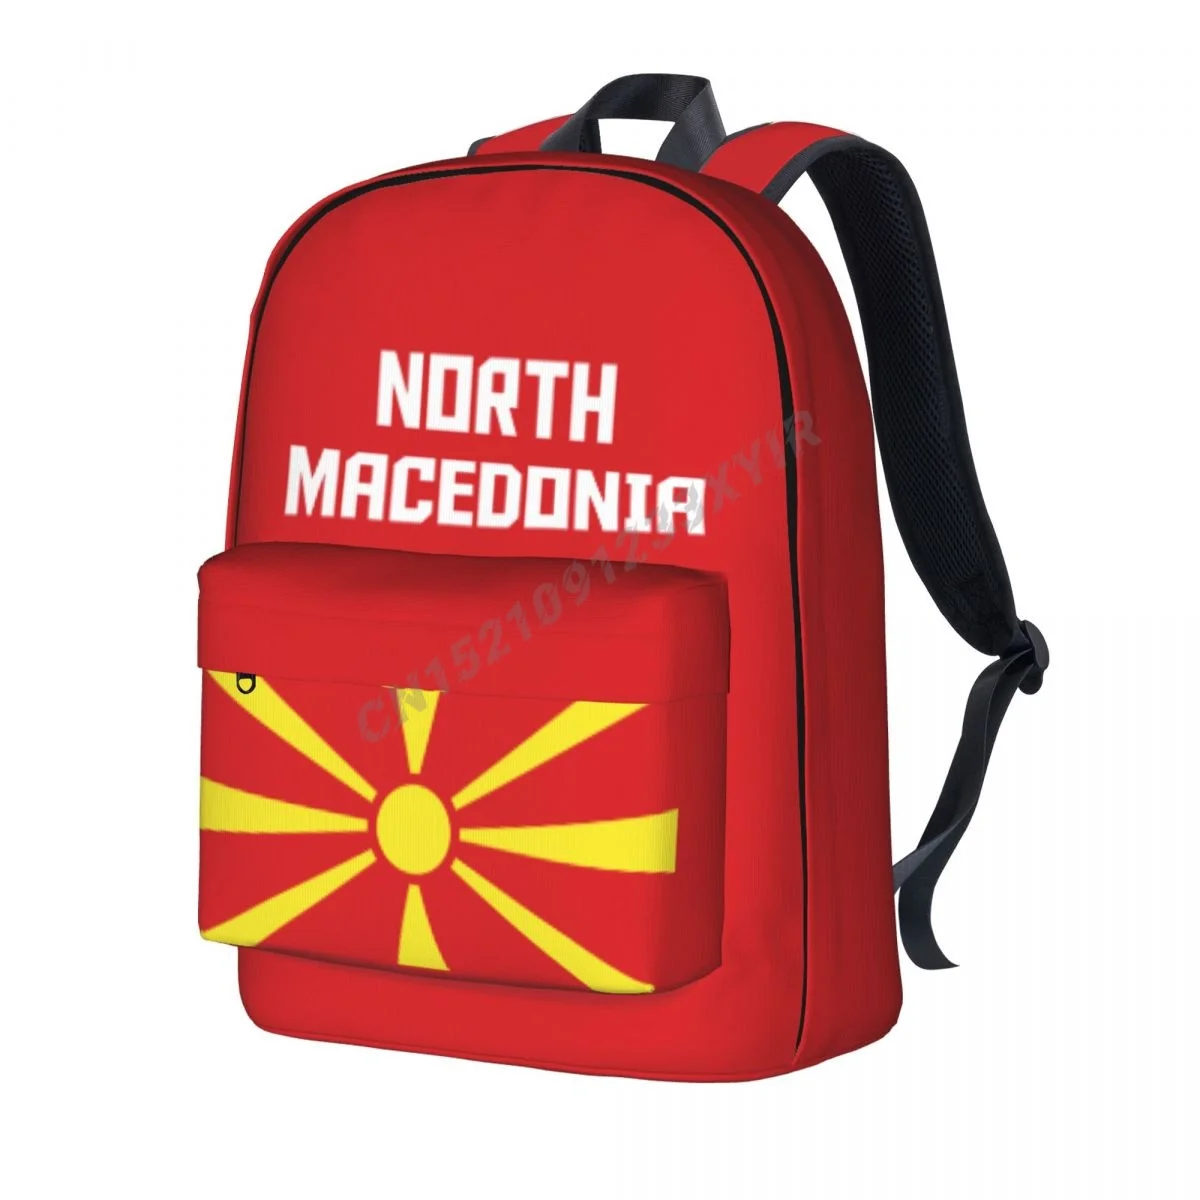 Mochila Unisex con bandera de Macedonia del Norte, Bolsa Escolar con puntada...